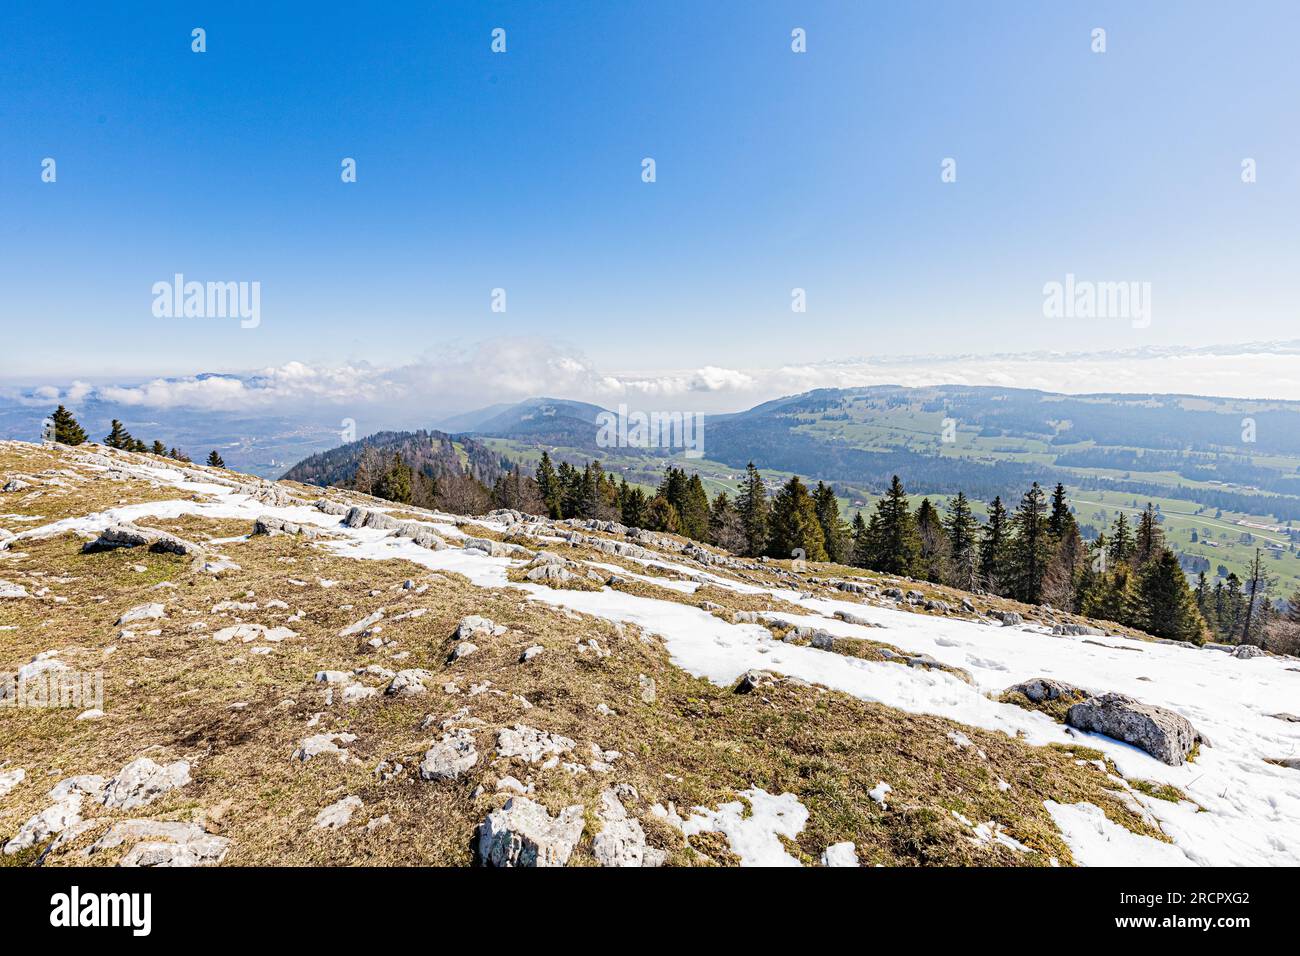 La Dent de Vaulion en Suisse dans la vallée de Joux, Kanton de Vaud. Située à 1500m d'altitude avec un Panorama à 360°. Vue sur le lac de Joux. Lorsqu Stockfoto